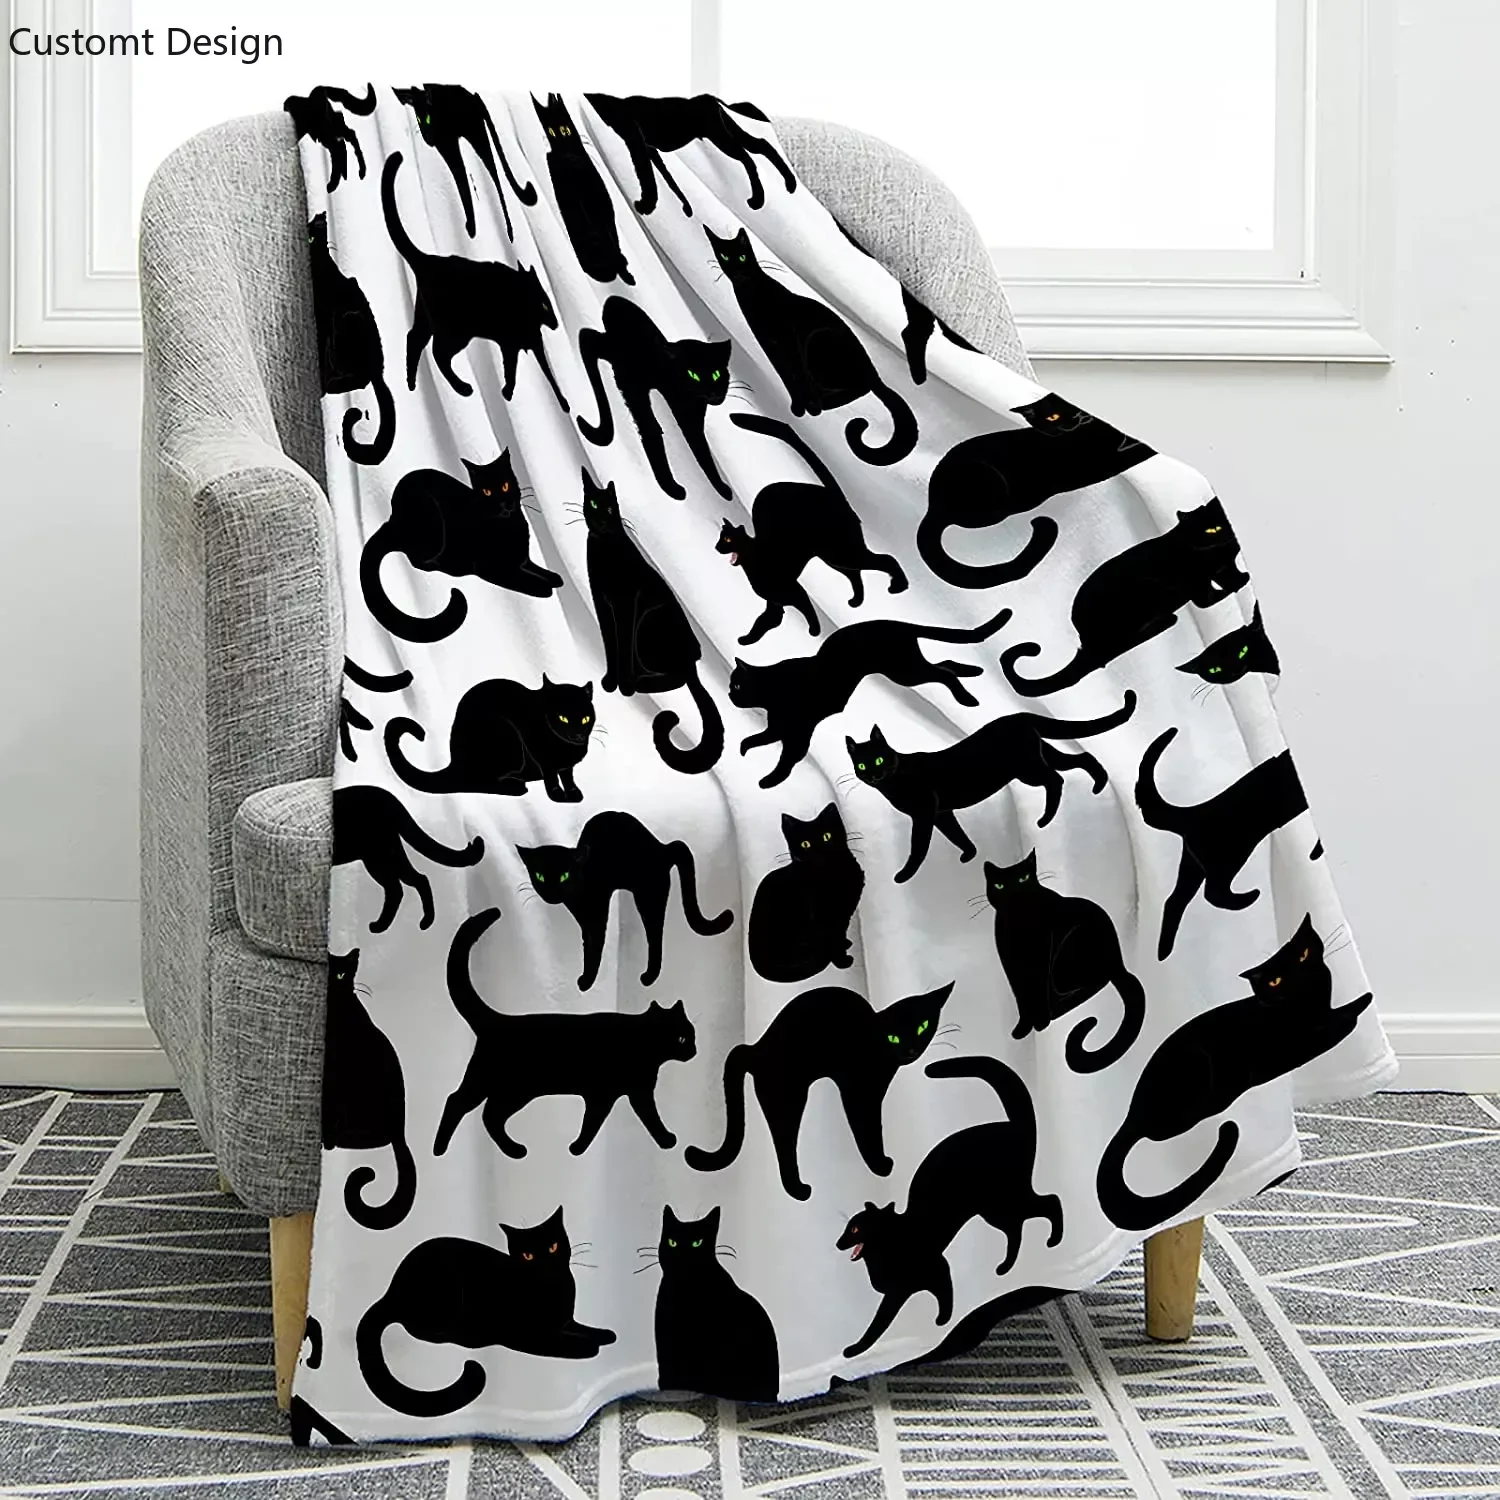 

Одеяло с принтом черного кота, Фланелевое покрывало с милыми мультяшными кошками, детский легкий ковер для дивана, стула, кровати, офиса, путешествий, кемпинга